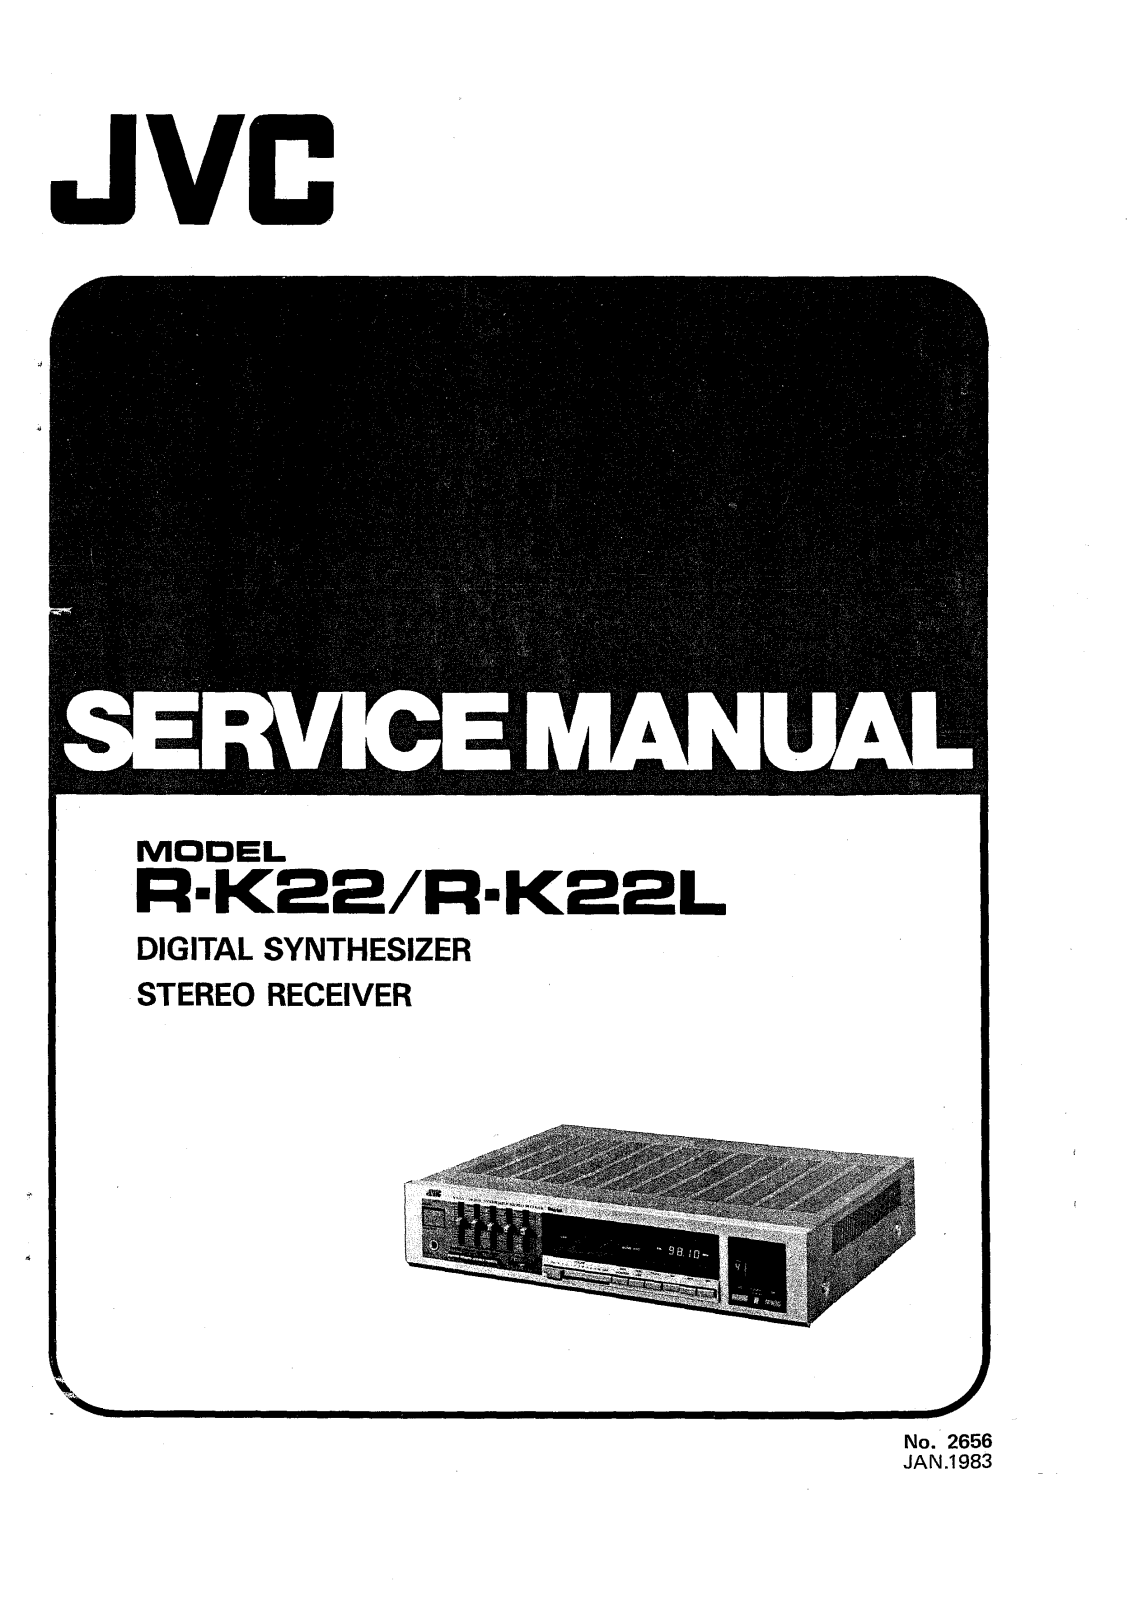 JVC RK-22, RK-22-L Service manual